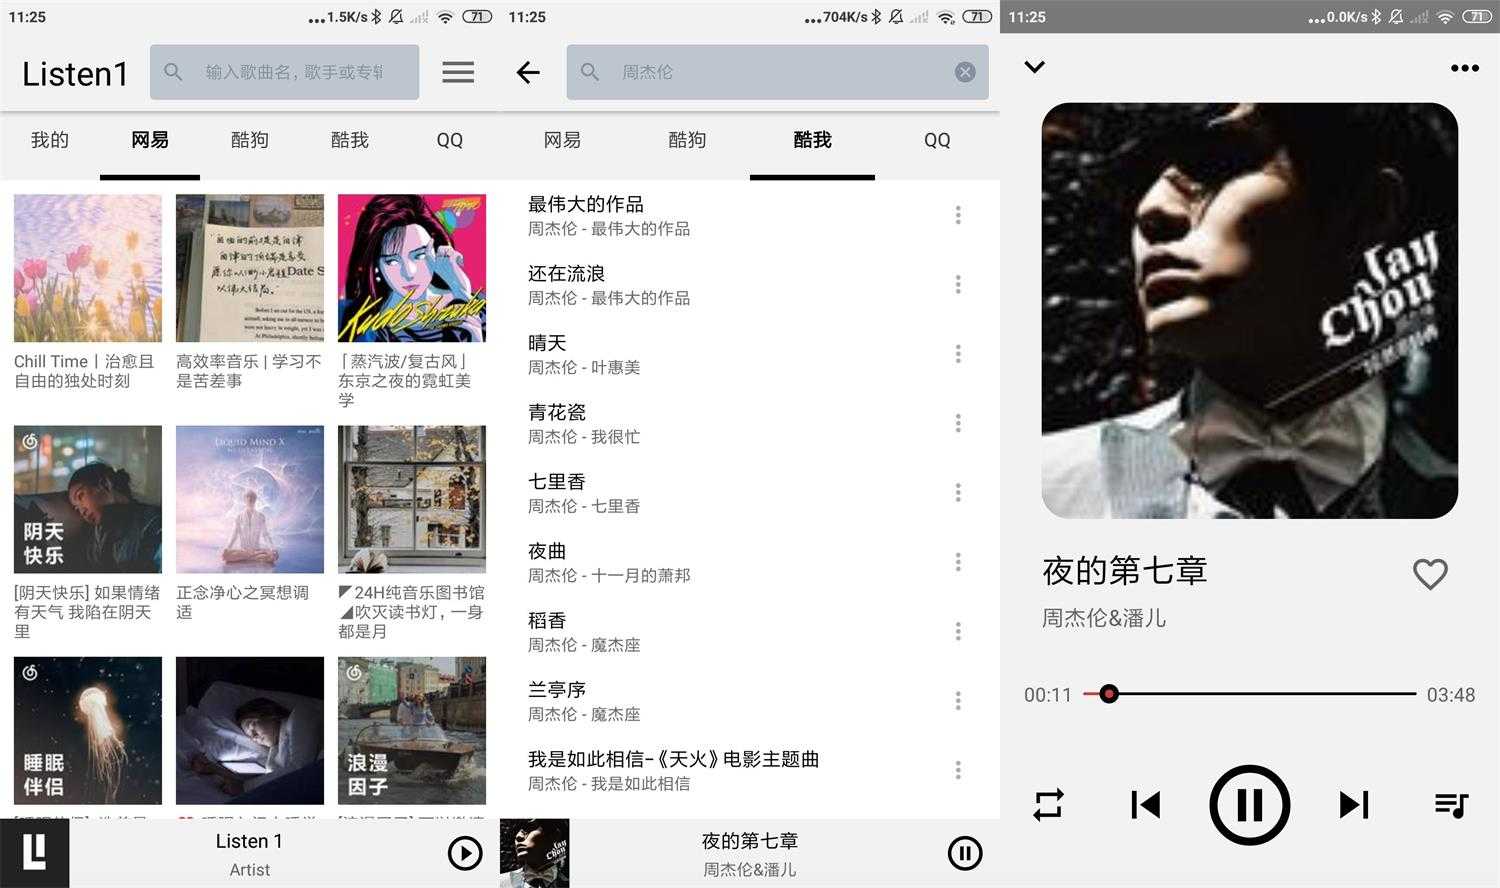 手机版Listen 1是一款非常不错的多平台音乐播放软件，可以搜索和播放来自网易云音乐，QQ音乐，酷狗音乐，酷我音乐，Bilibili，咪咕音乐网站的歌曲